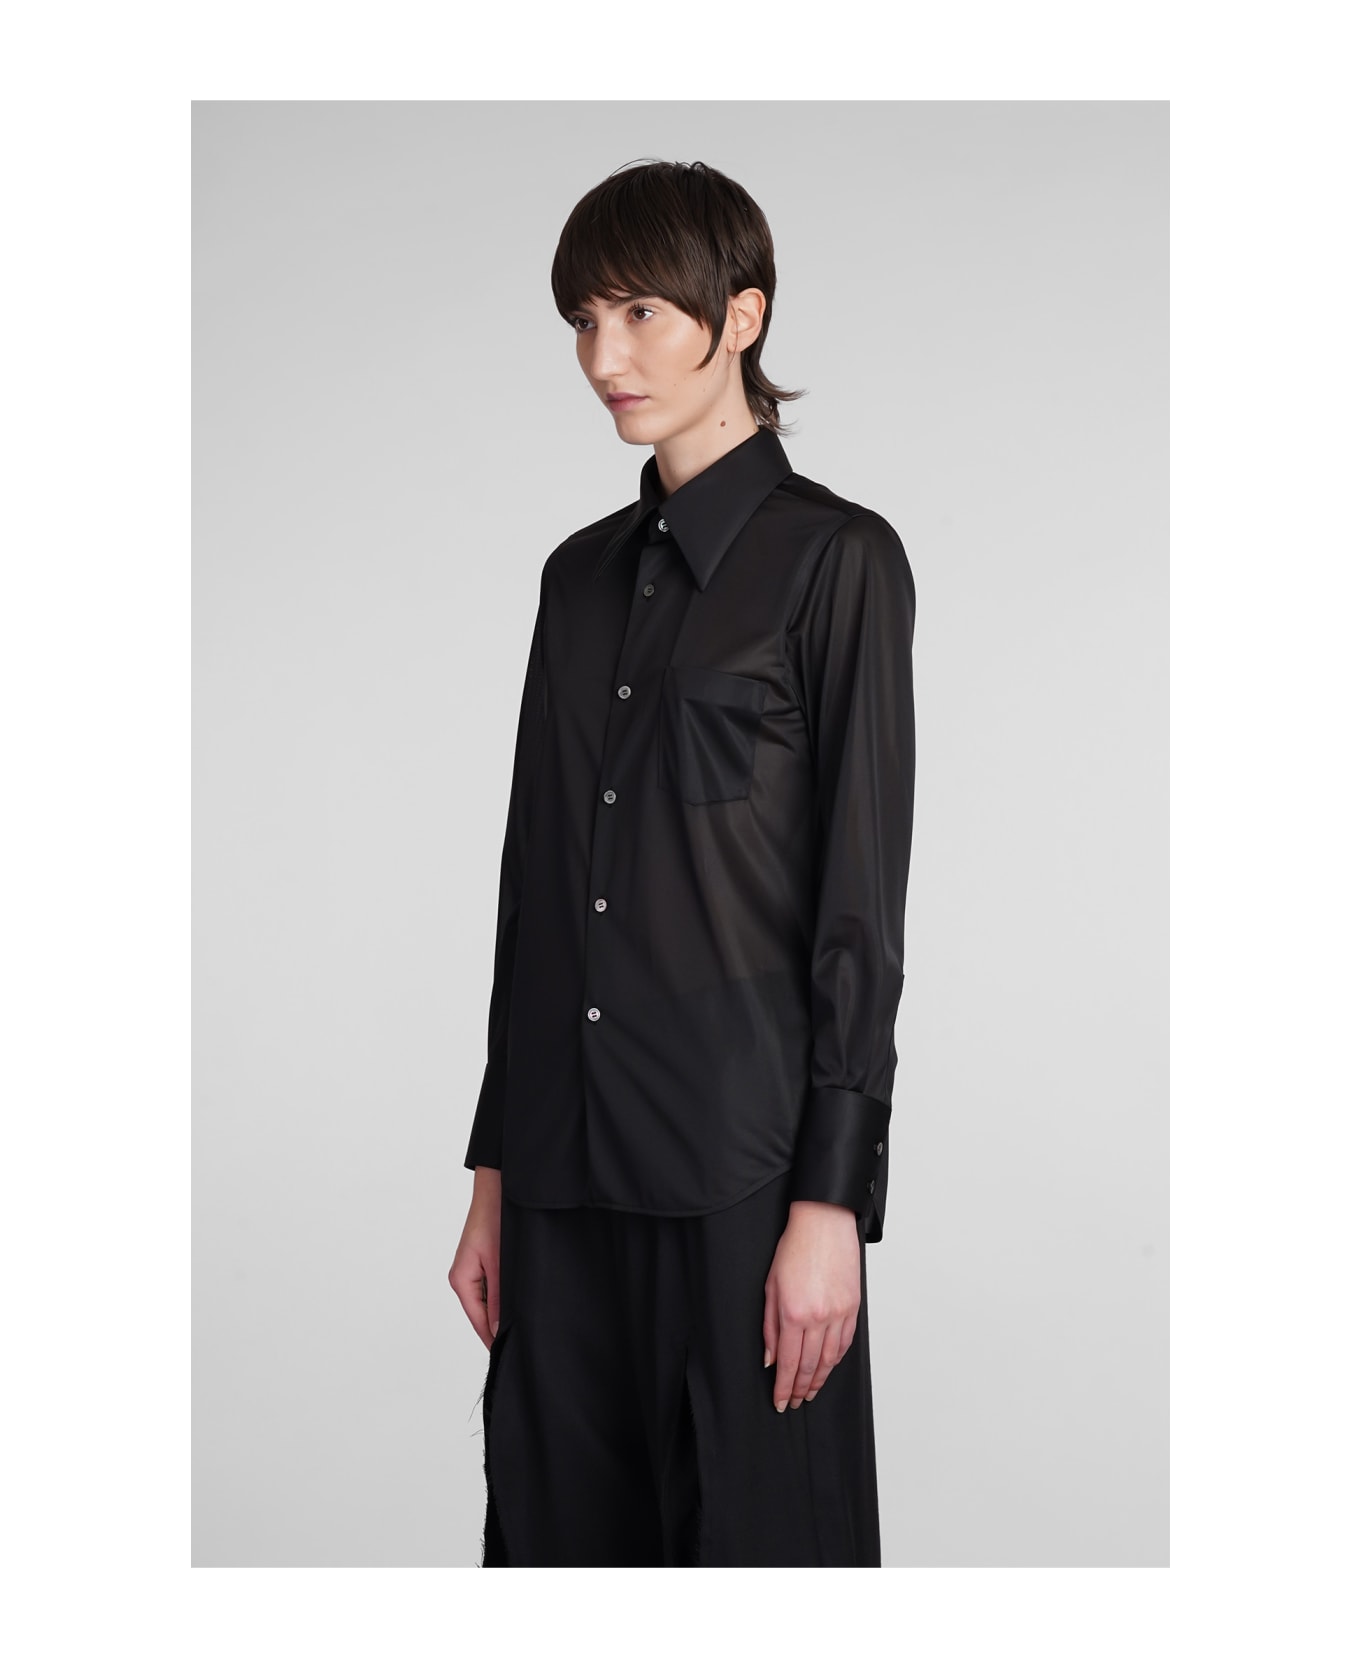 Comme des Garçons Shirt In Black Polyester - black シャツ